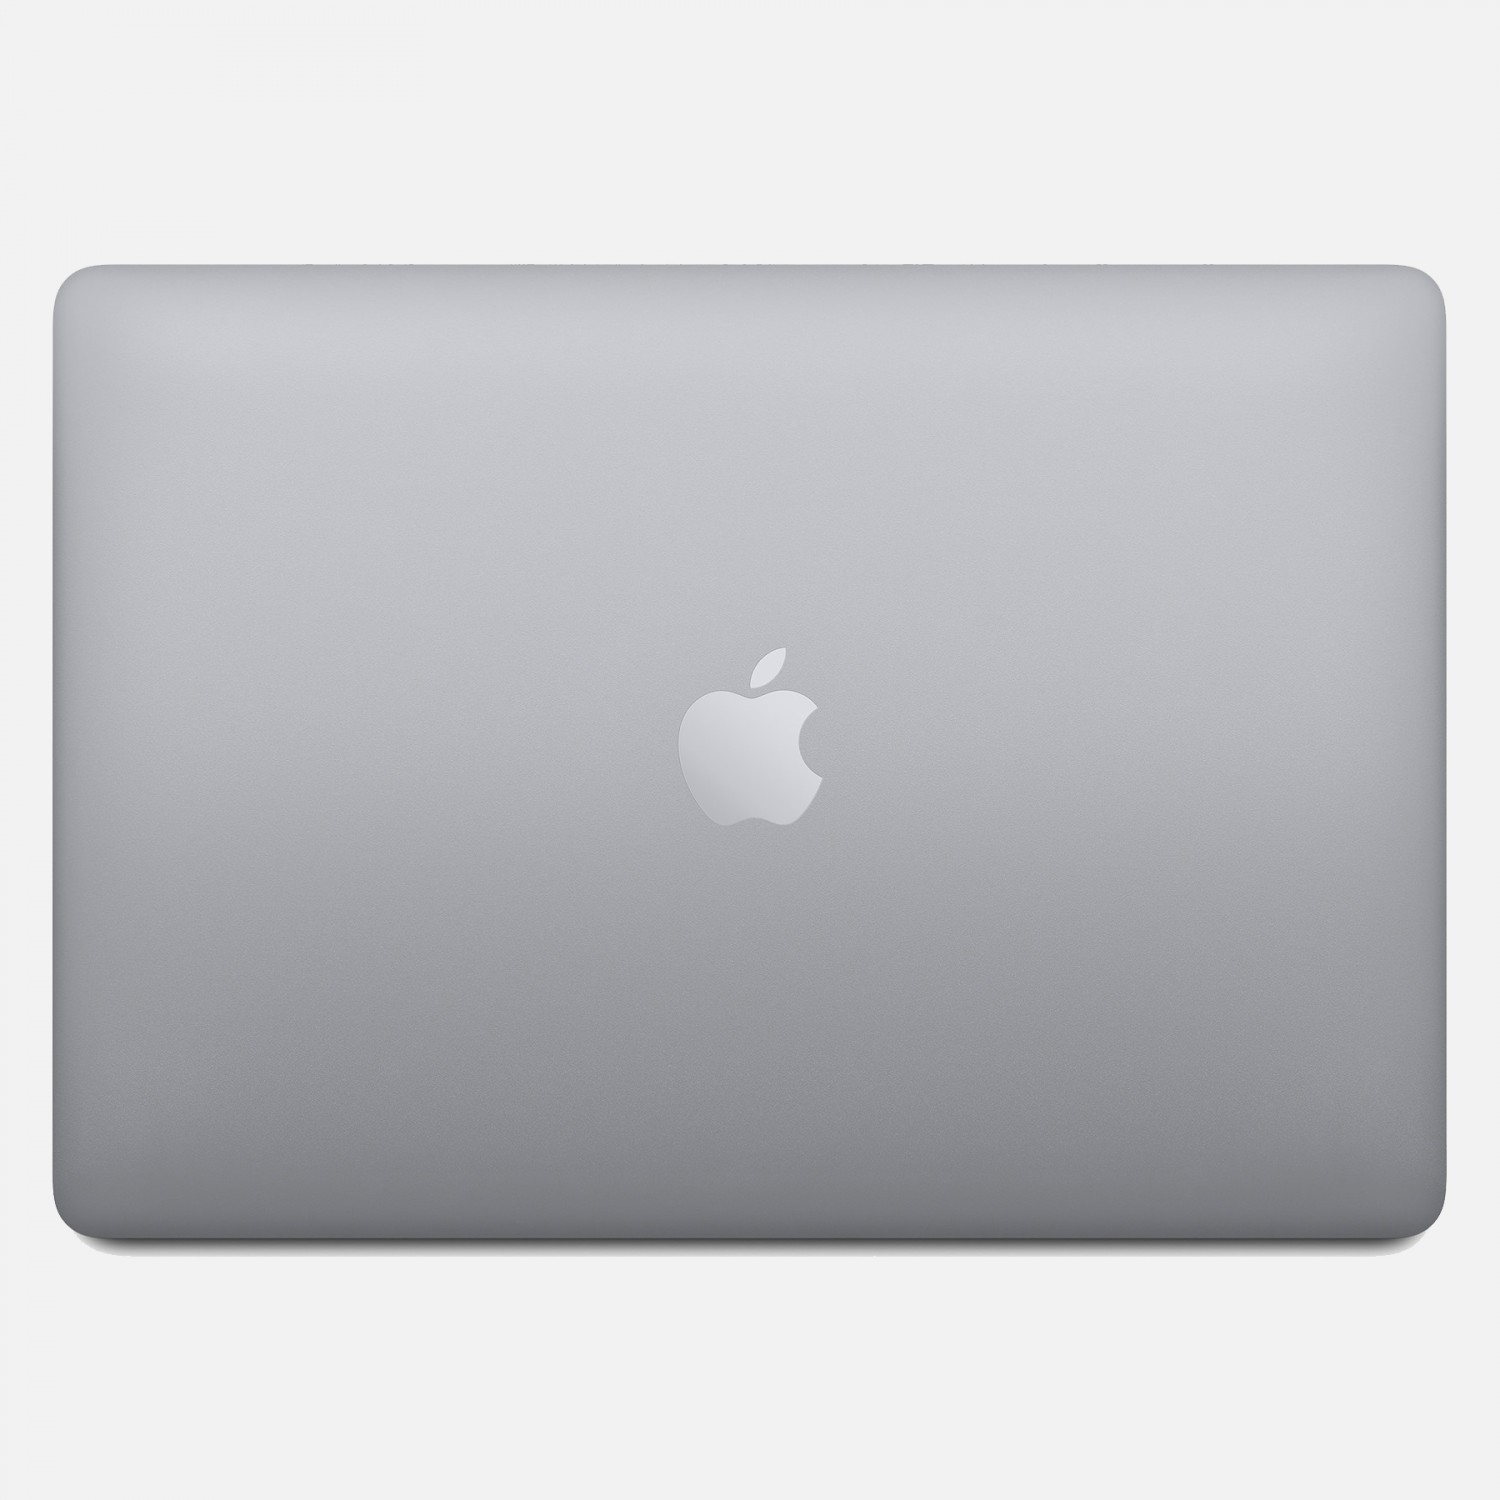 لپ تاپ Apple MacBook Pro 13 2020 CTO - Space Grey - D-5